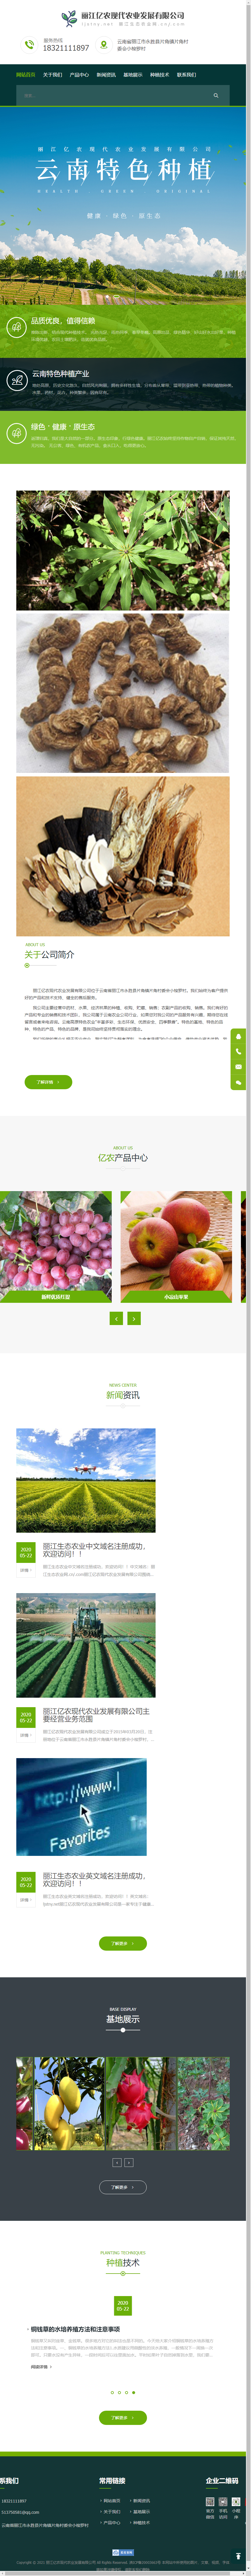 丽江亿农现代农业发展有限公司网站案例